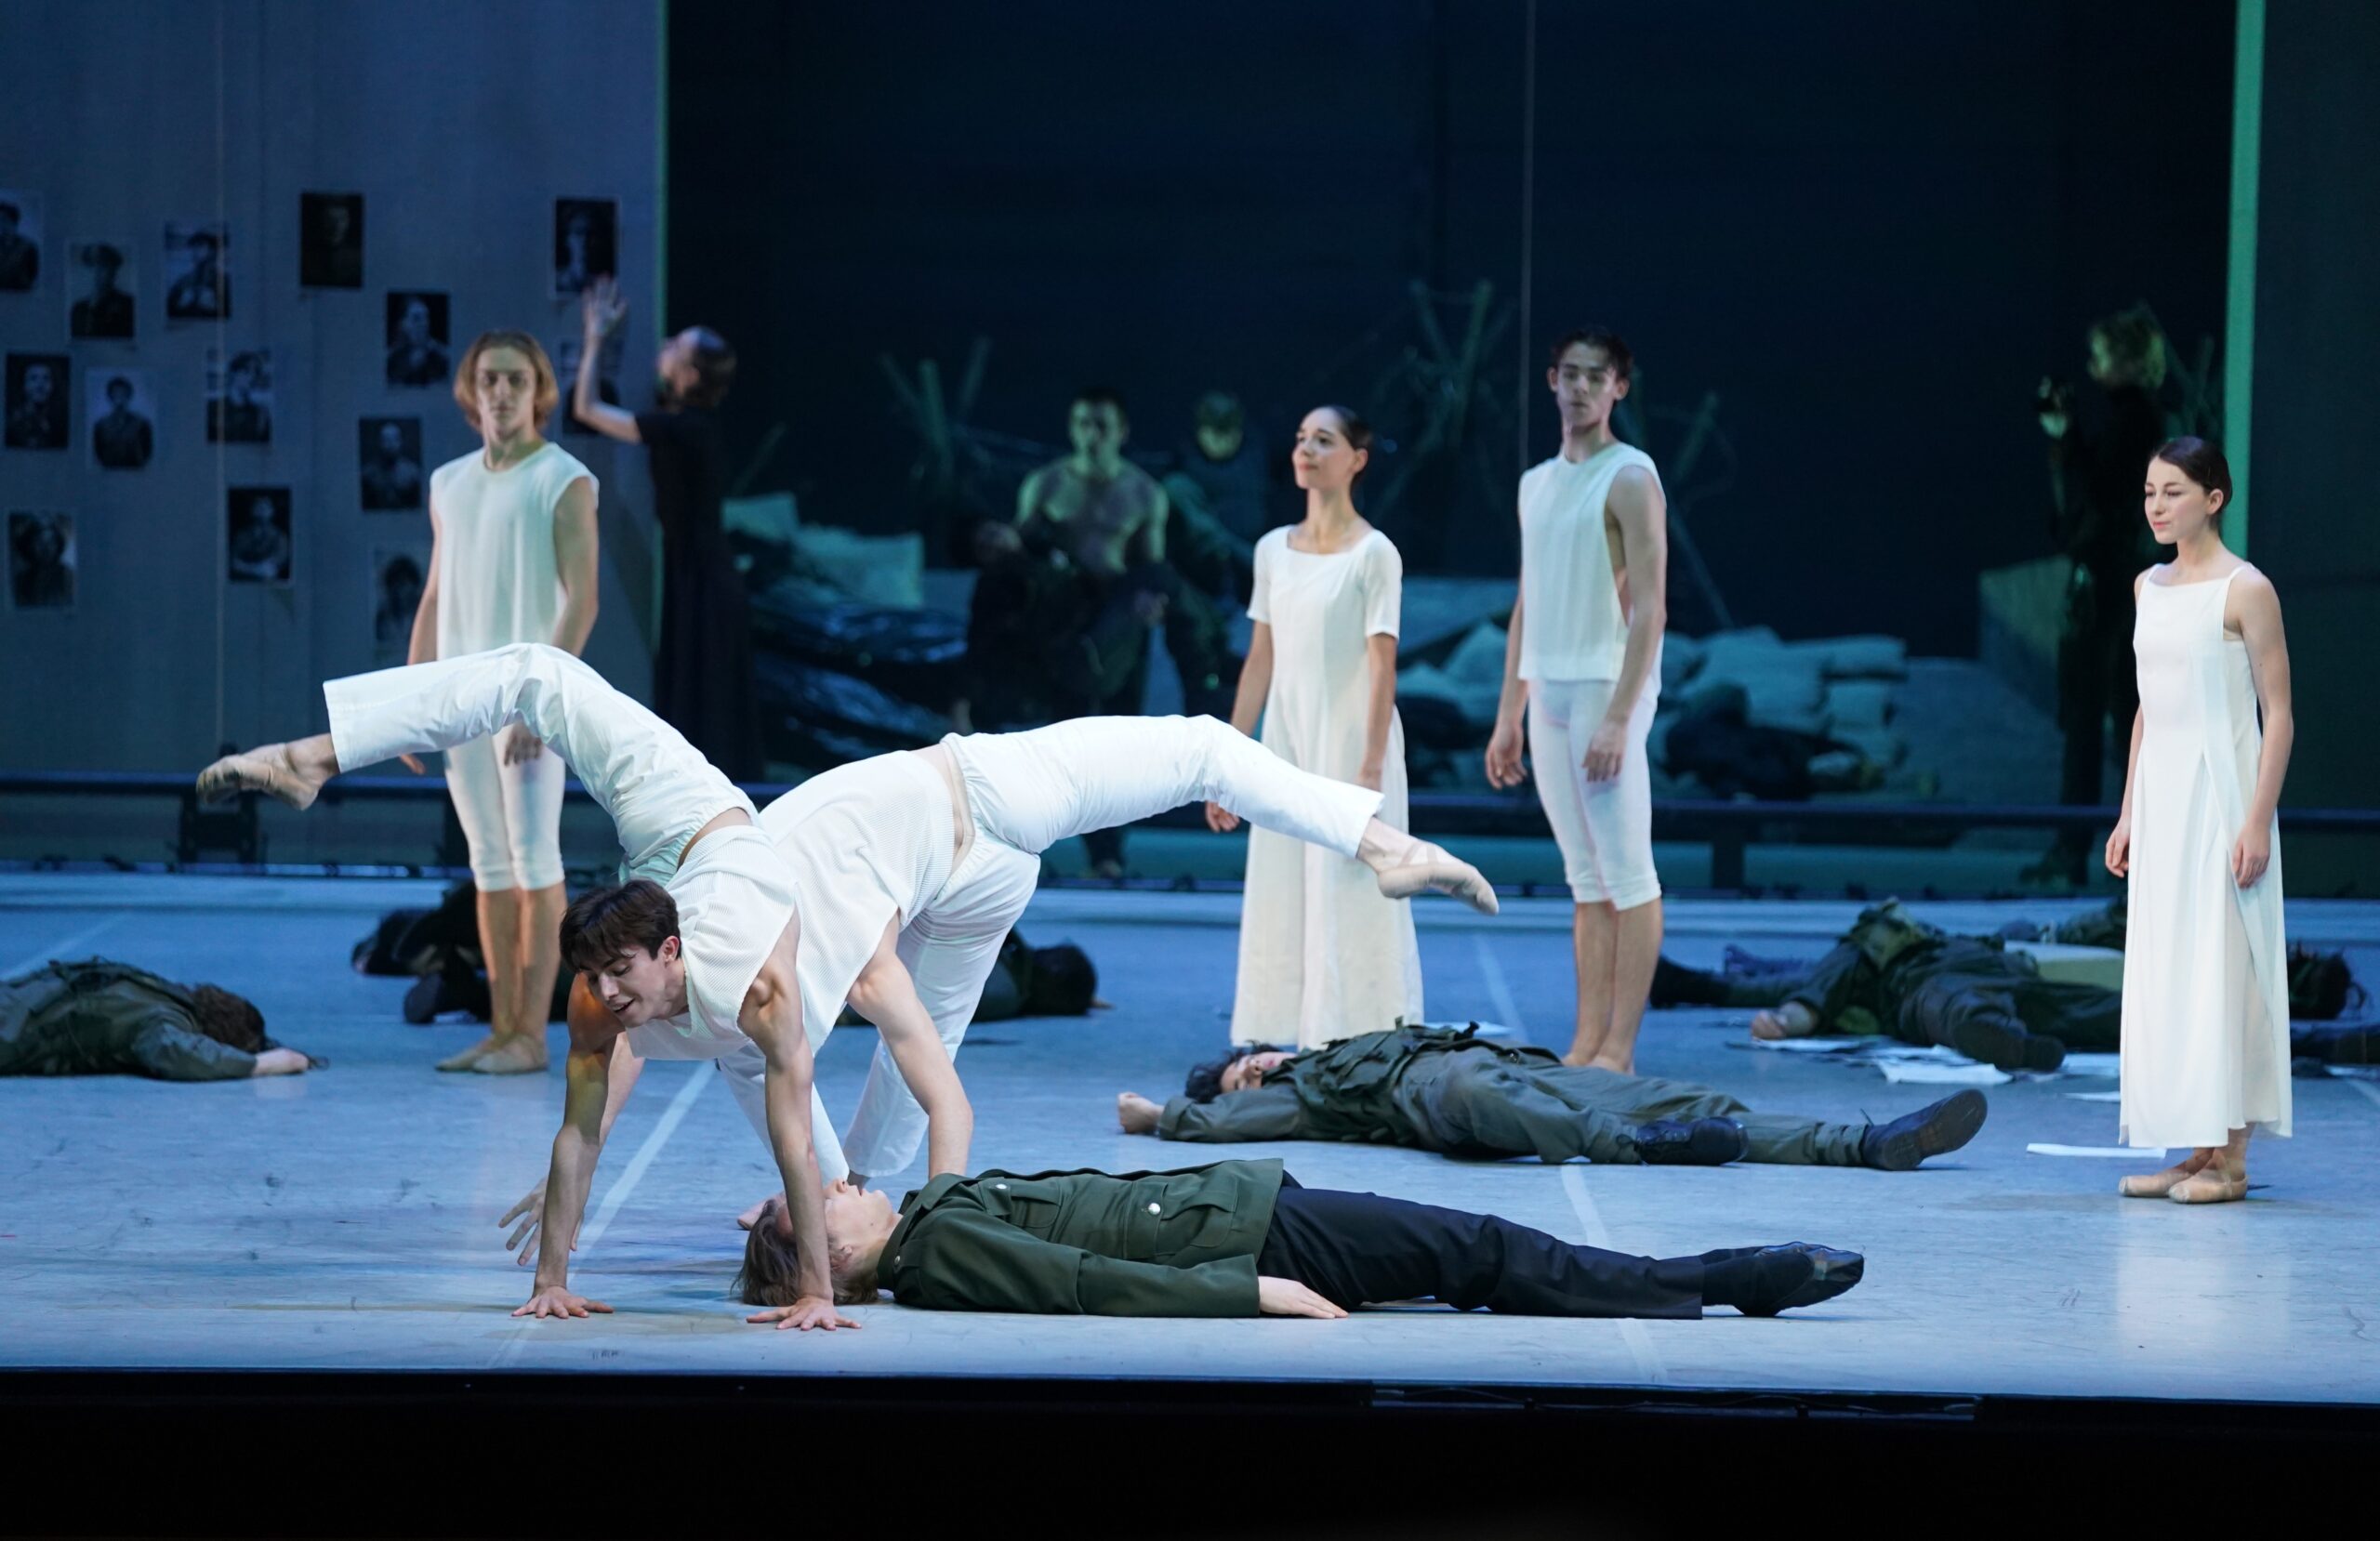 Balletttänzer in weiß tanzen auf der Bühne. Unter ihnen liegen Soldaten